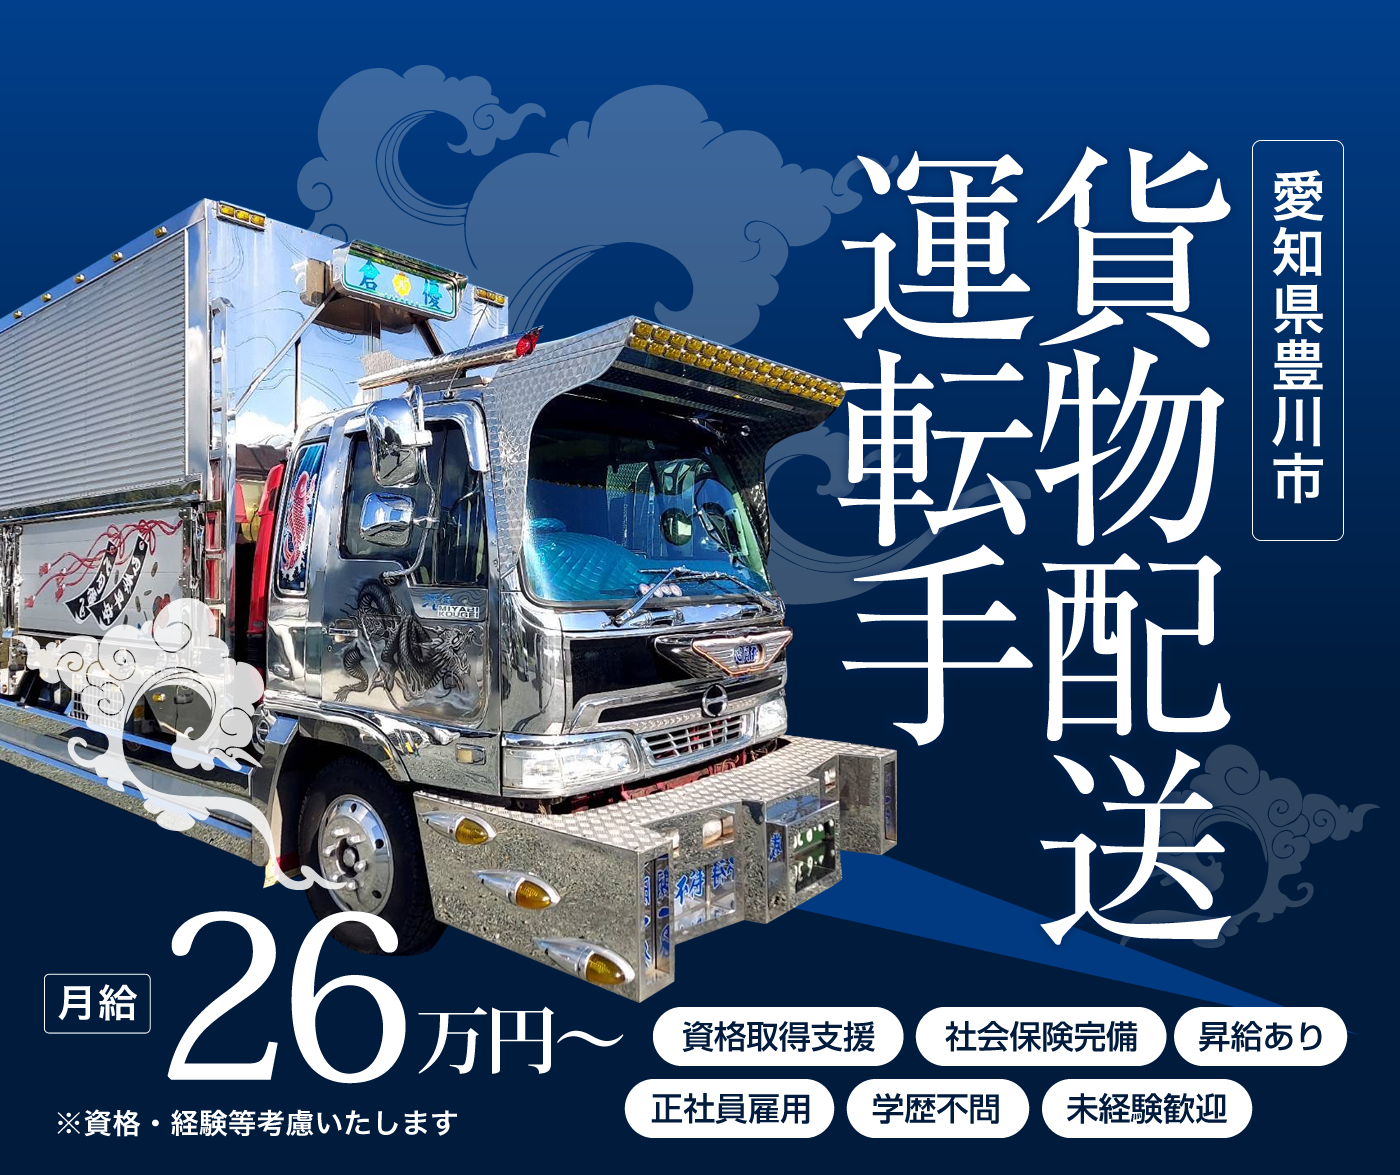 株式会社倉優は愛知県豊川市で貨物運送ドライバーを募集しています。